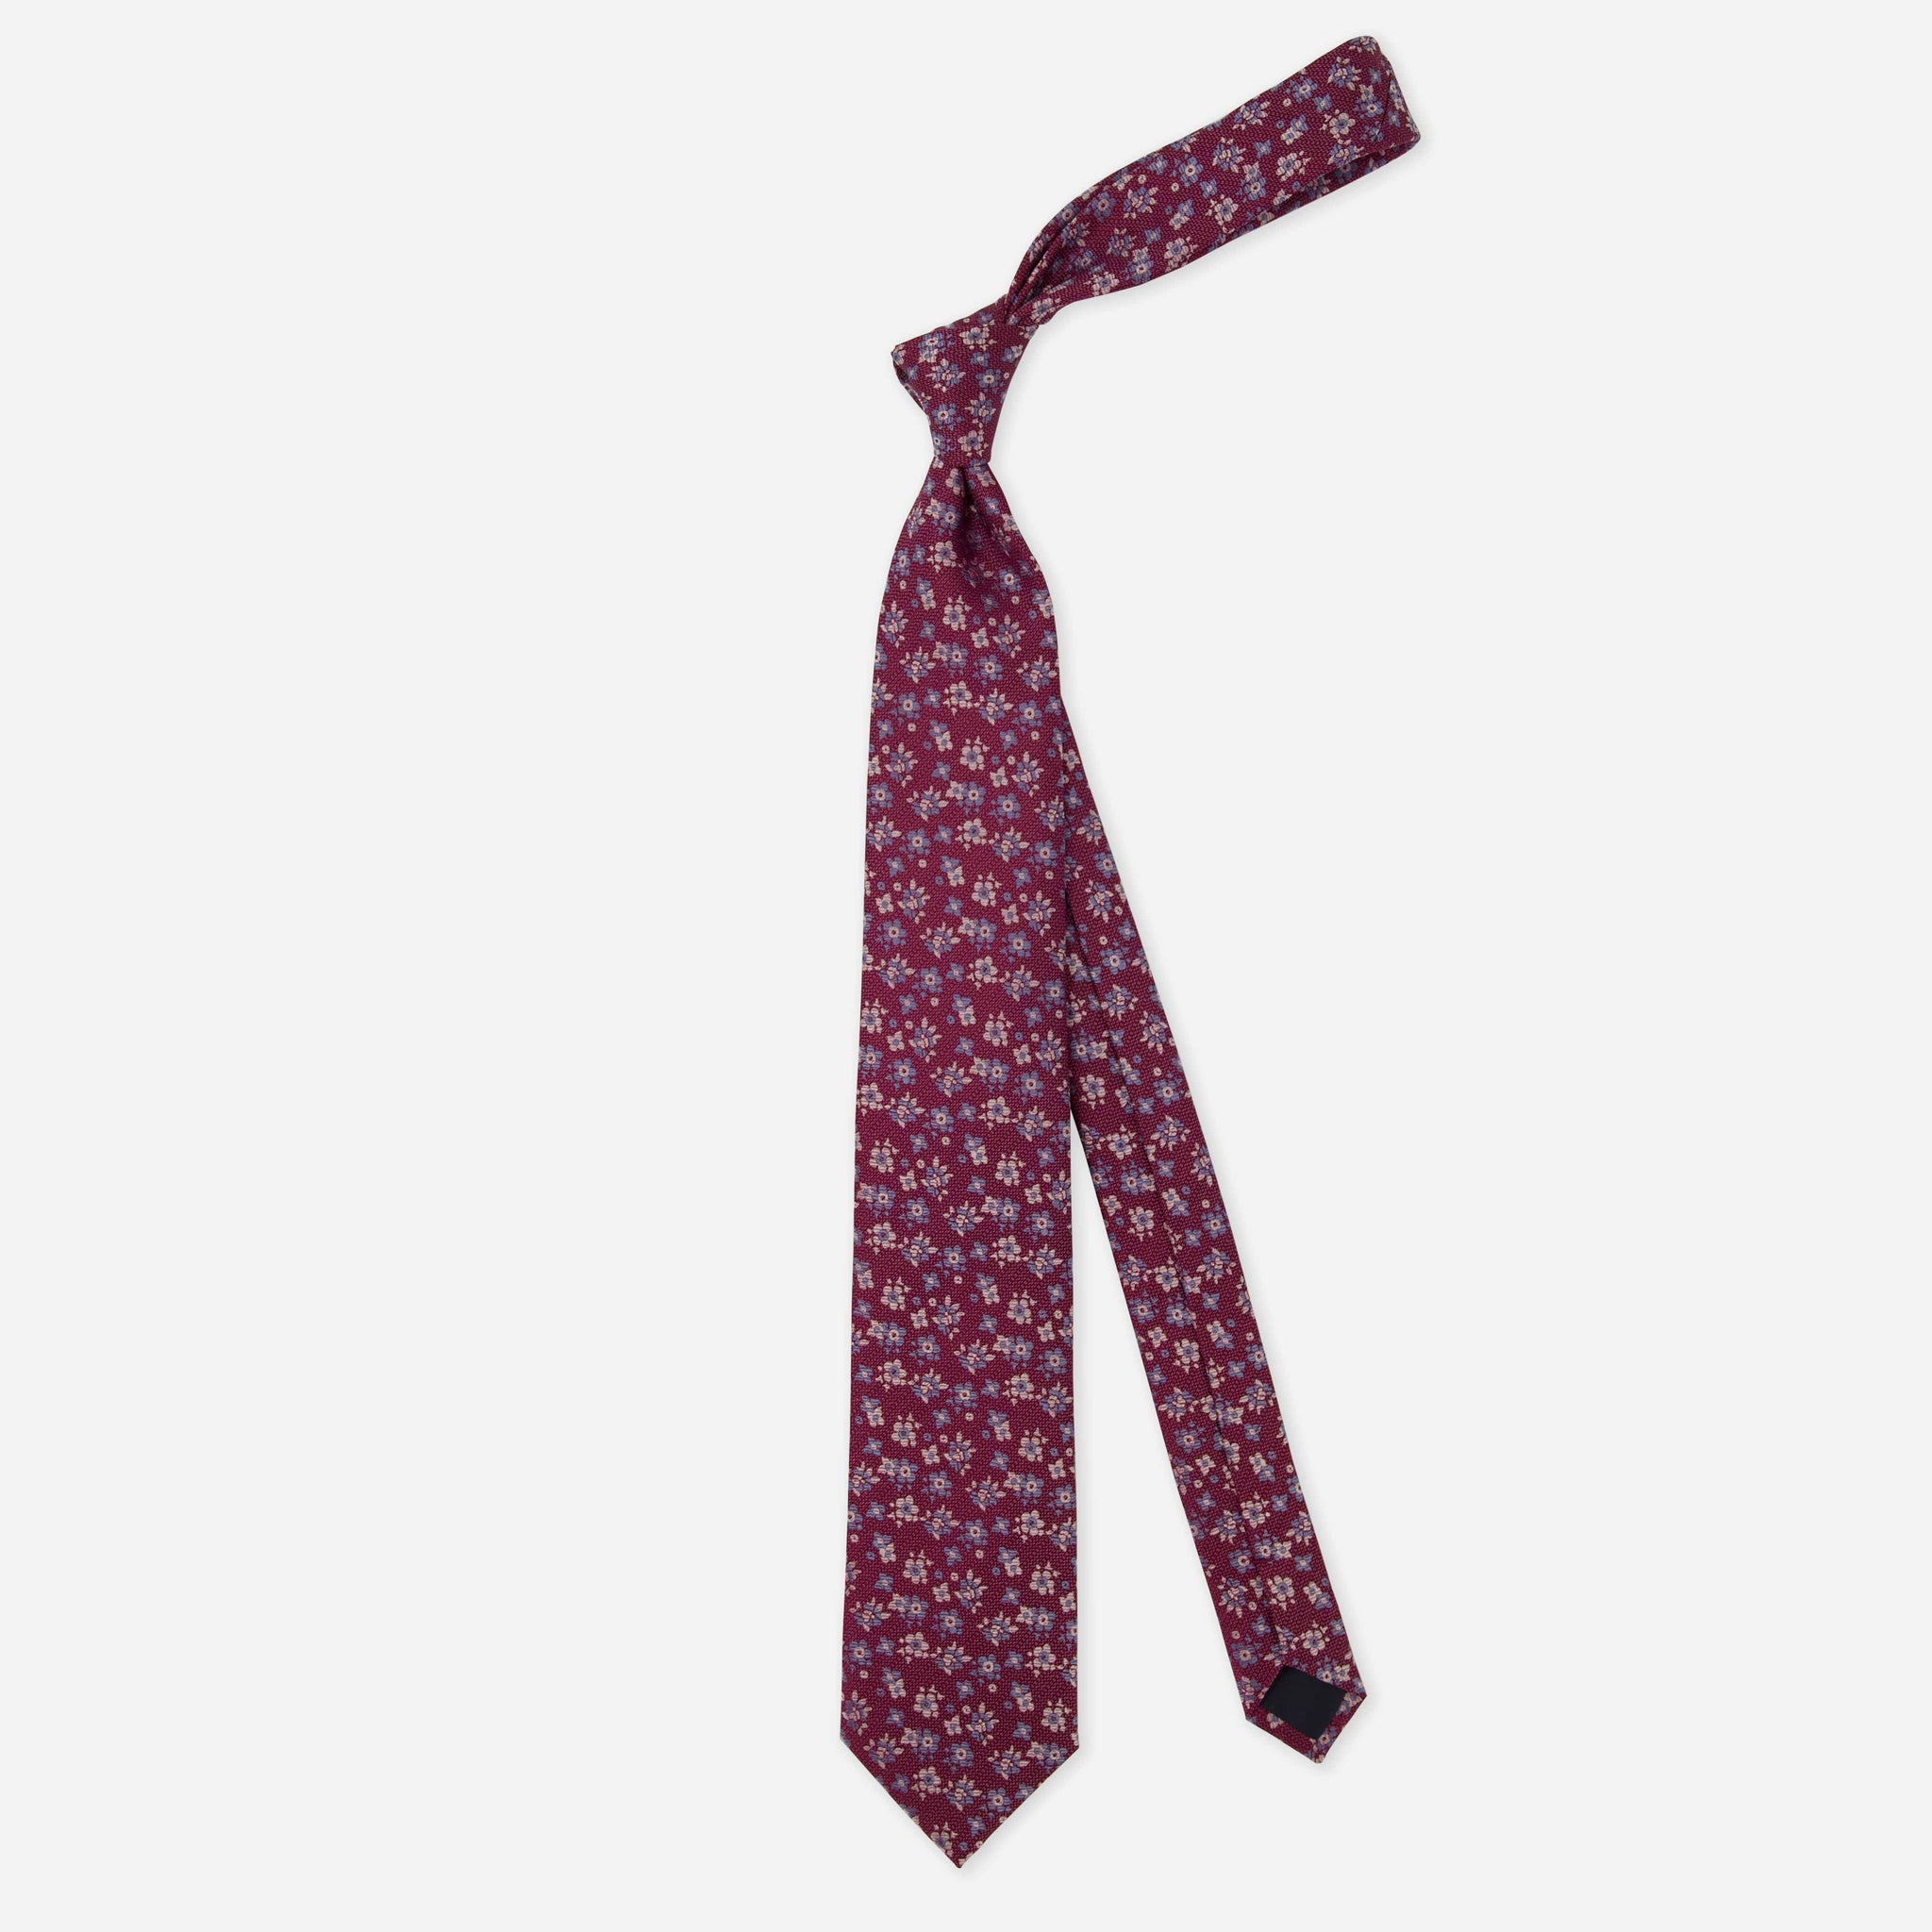 Marguerite Floral Burgundy Tie by Tie Bar